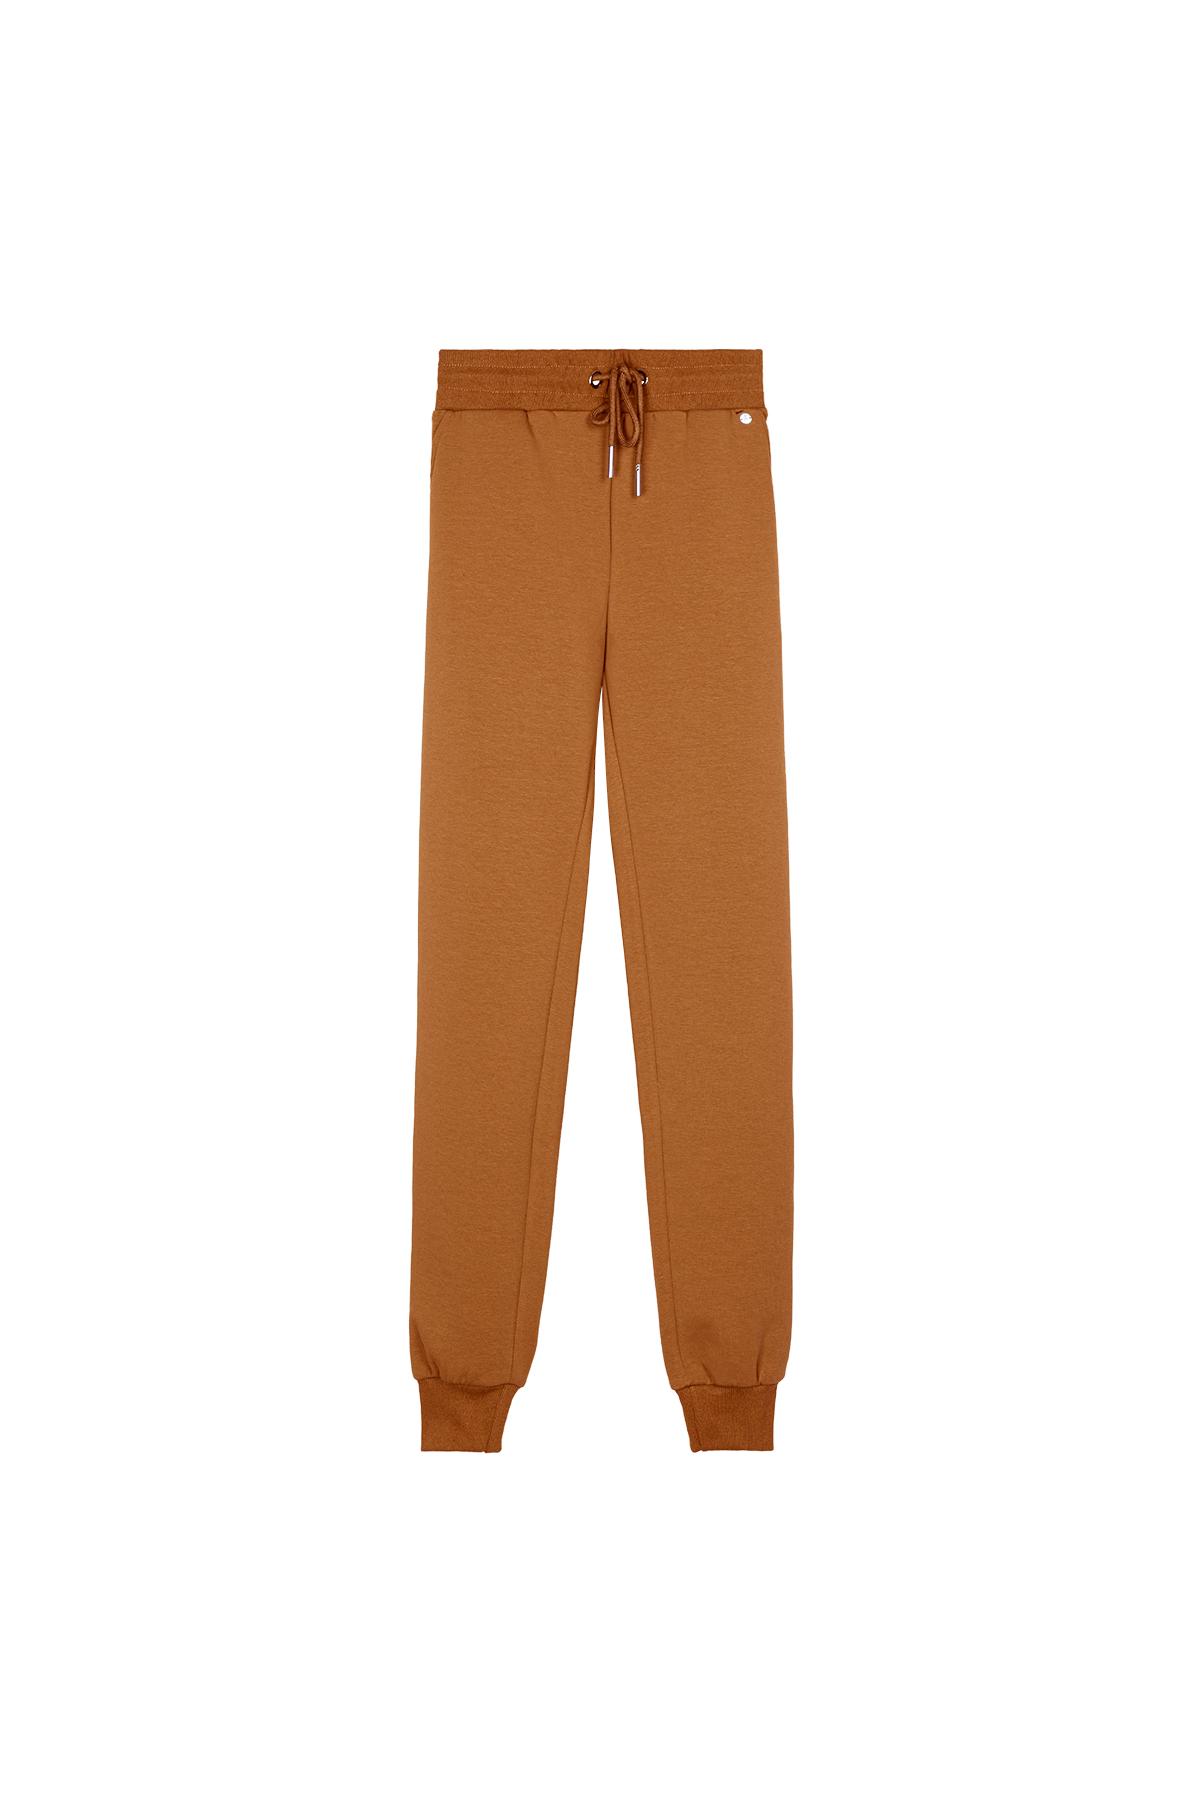 Pantalones cómodos estilo casual Naranja XL h5 